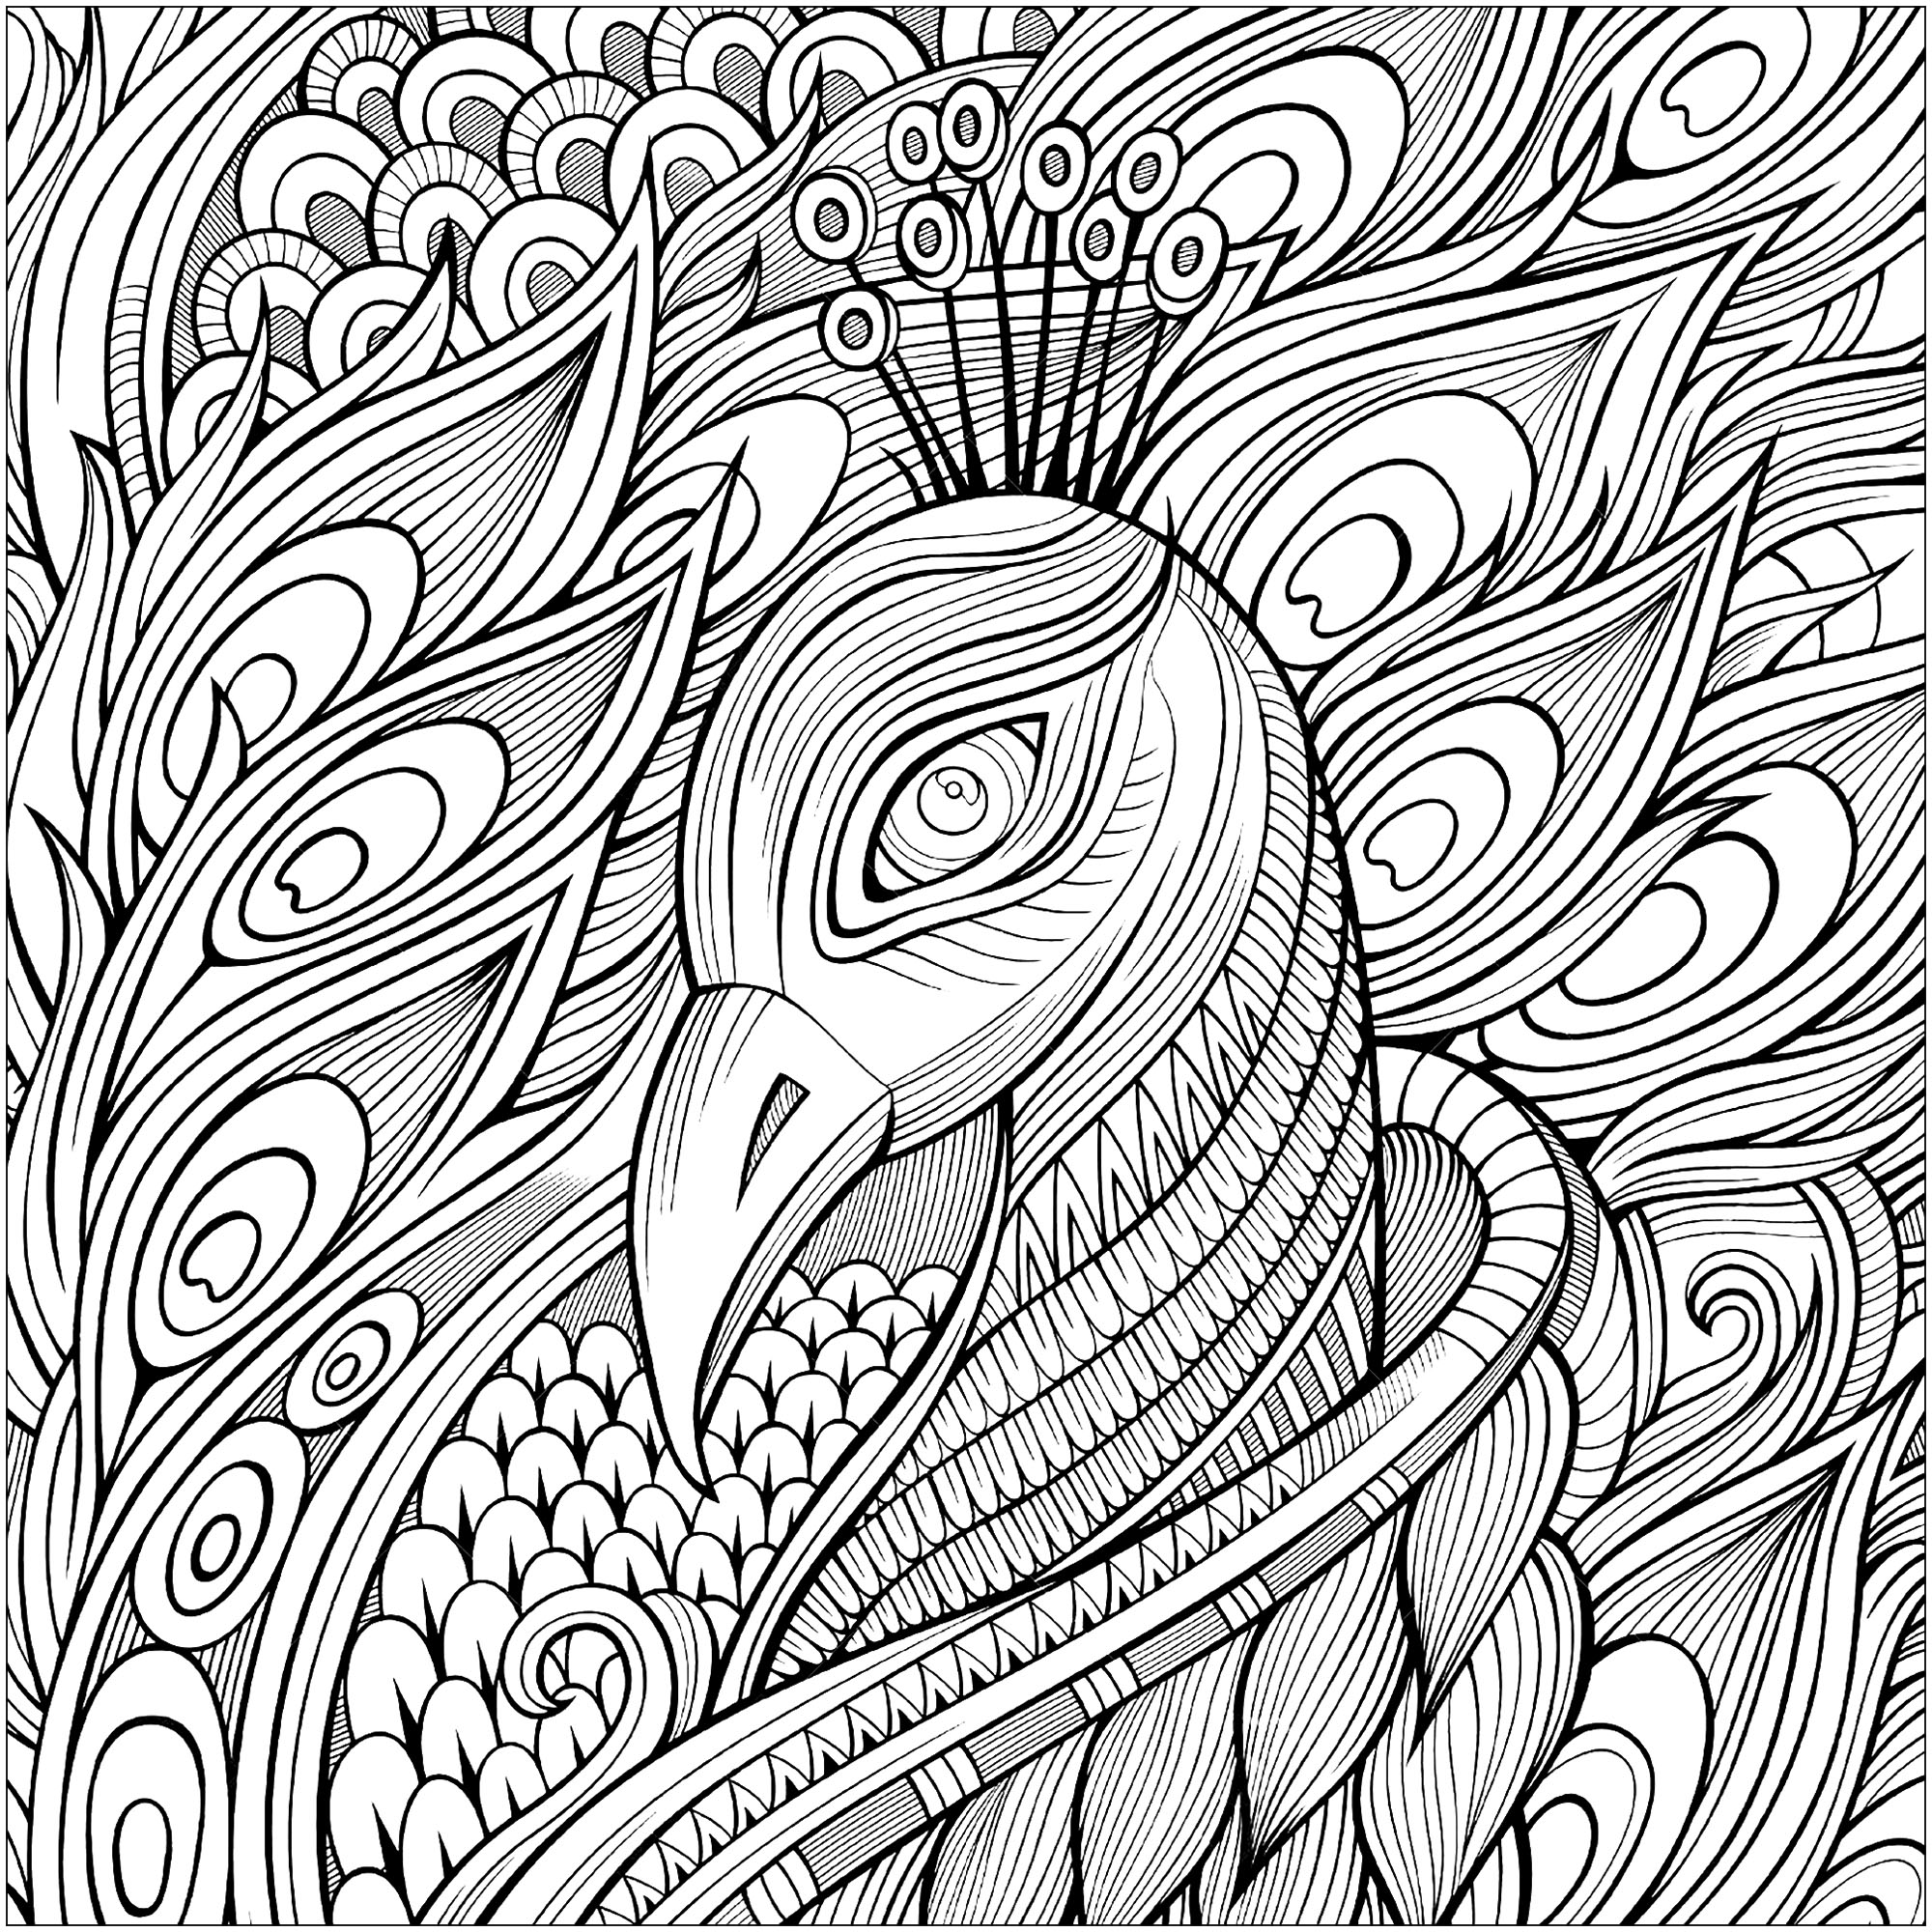 Página para colorear que representa la cabeza de pavo real y sus magníficas plumas, Origen : 123rf   Artista : Olga Kostenko